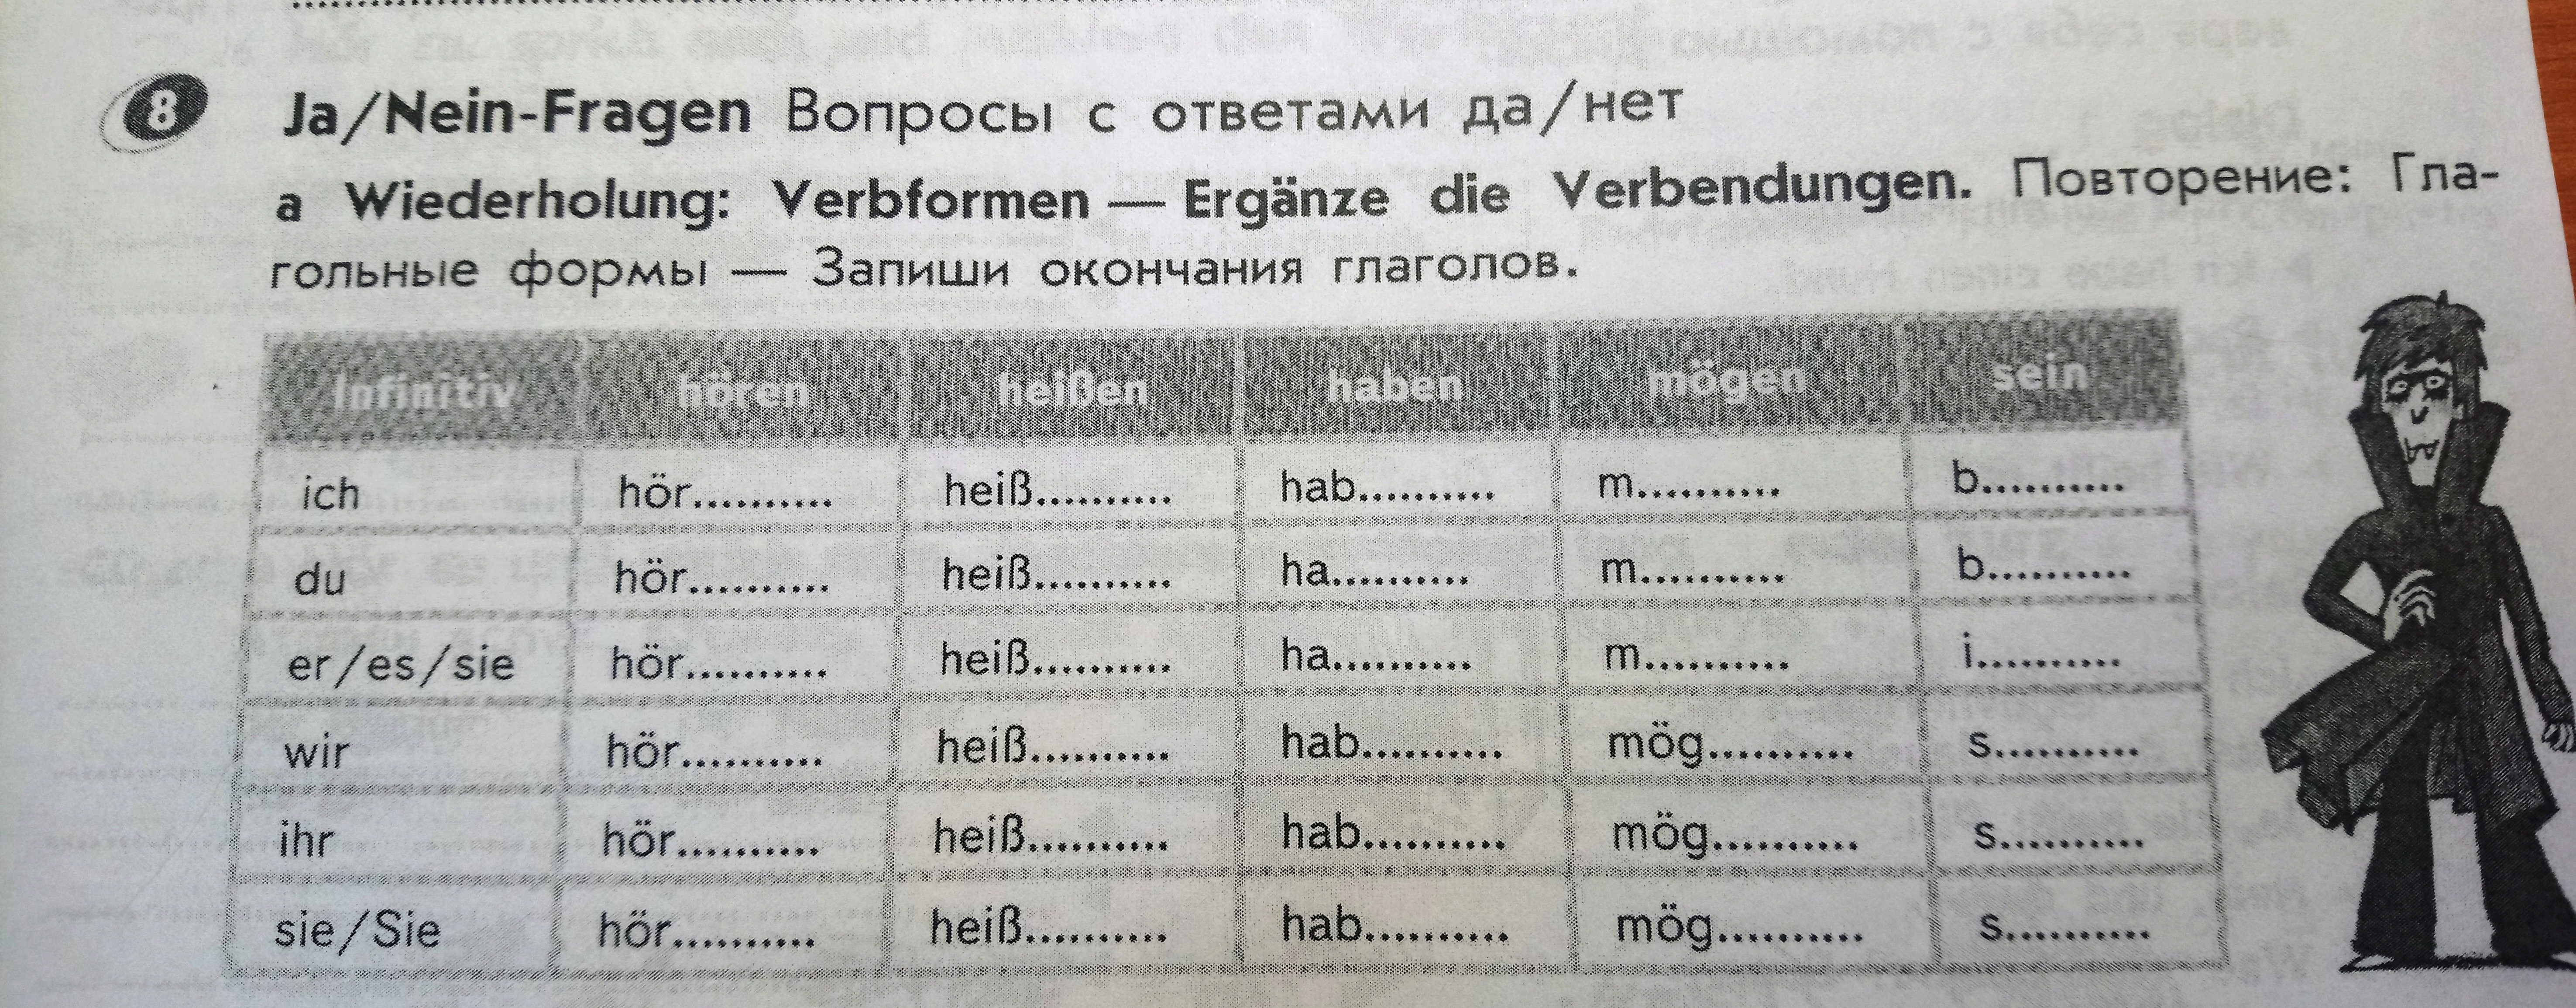 Запиши окончание глаголов на немецком языке